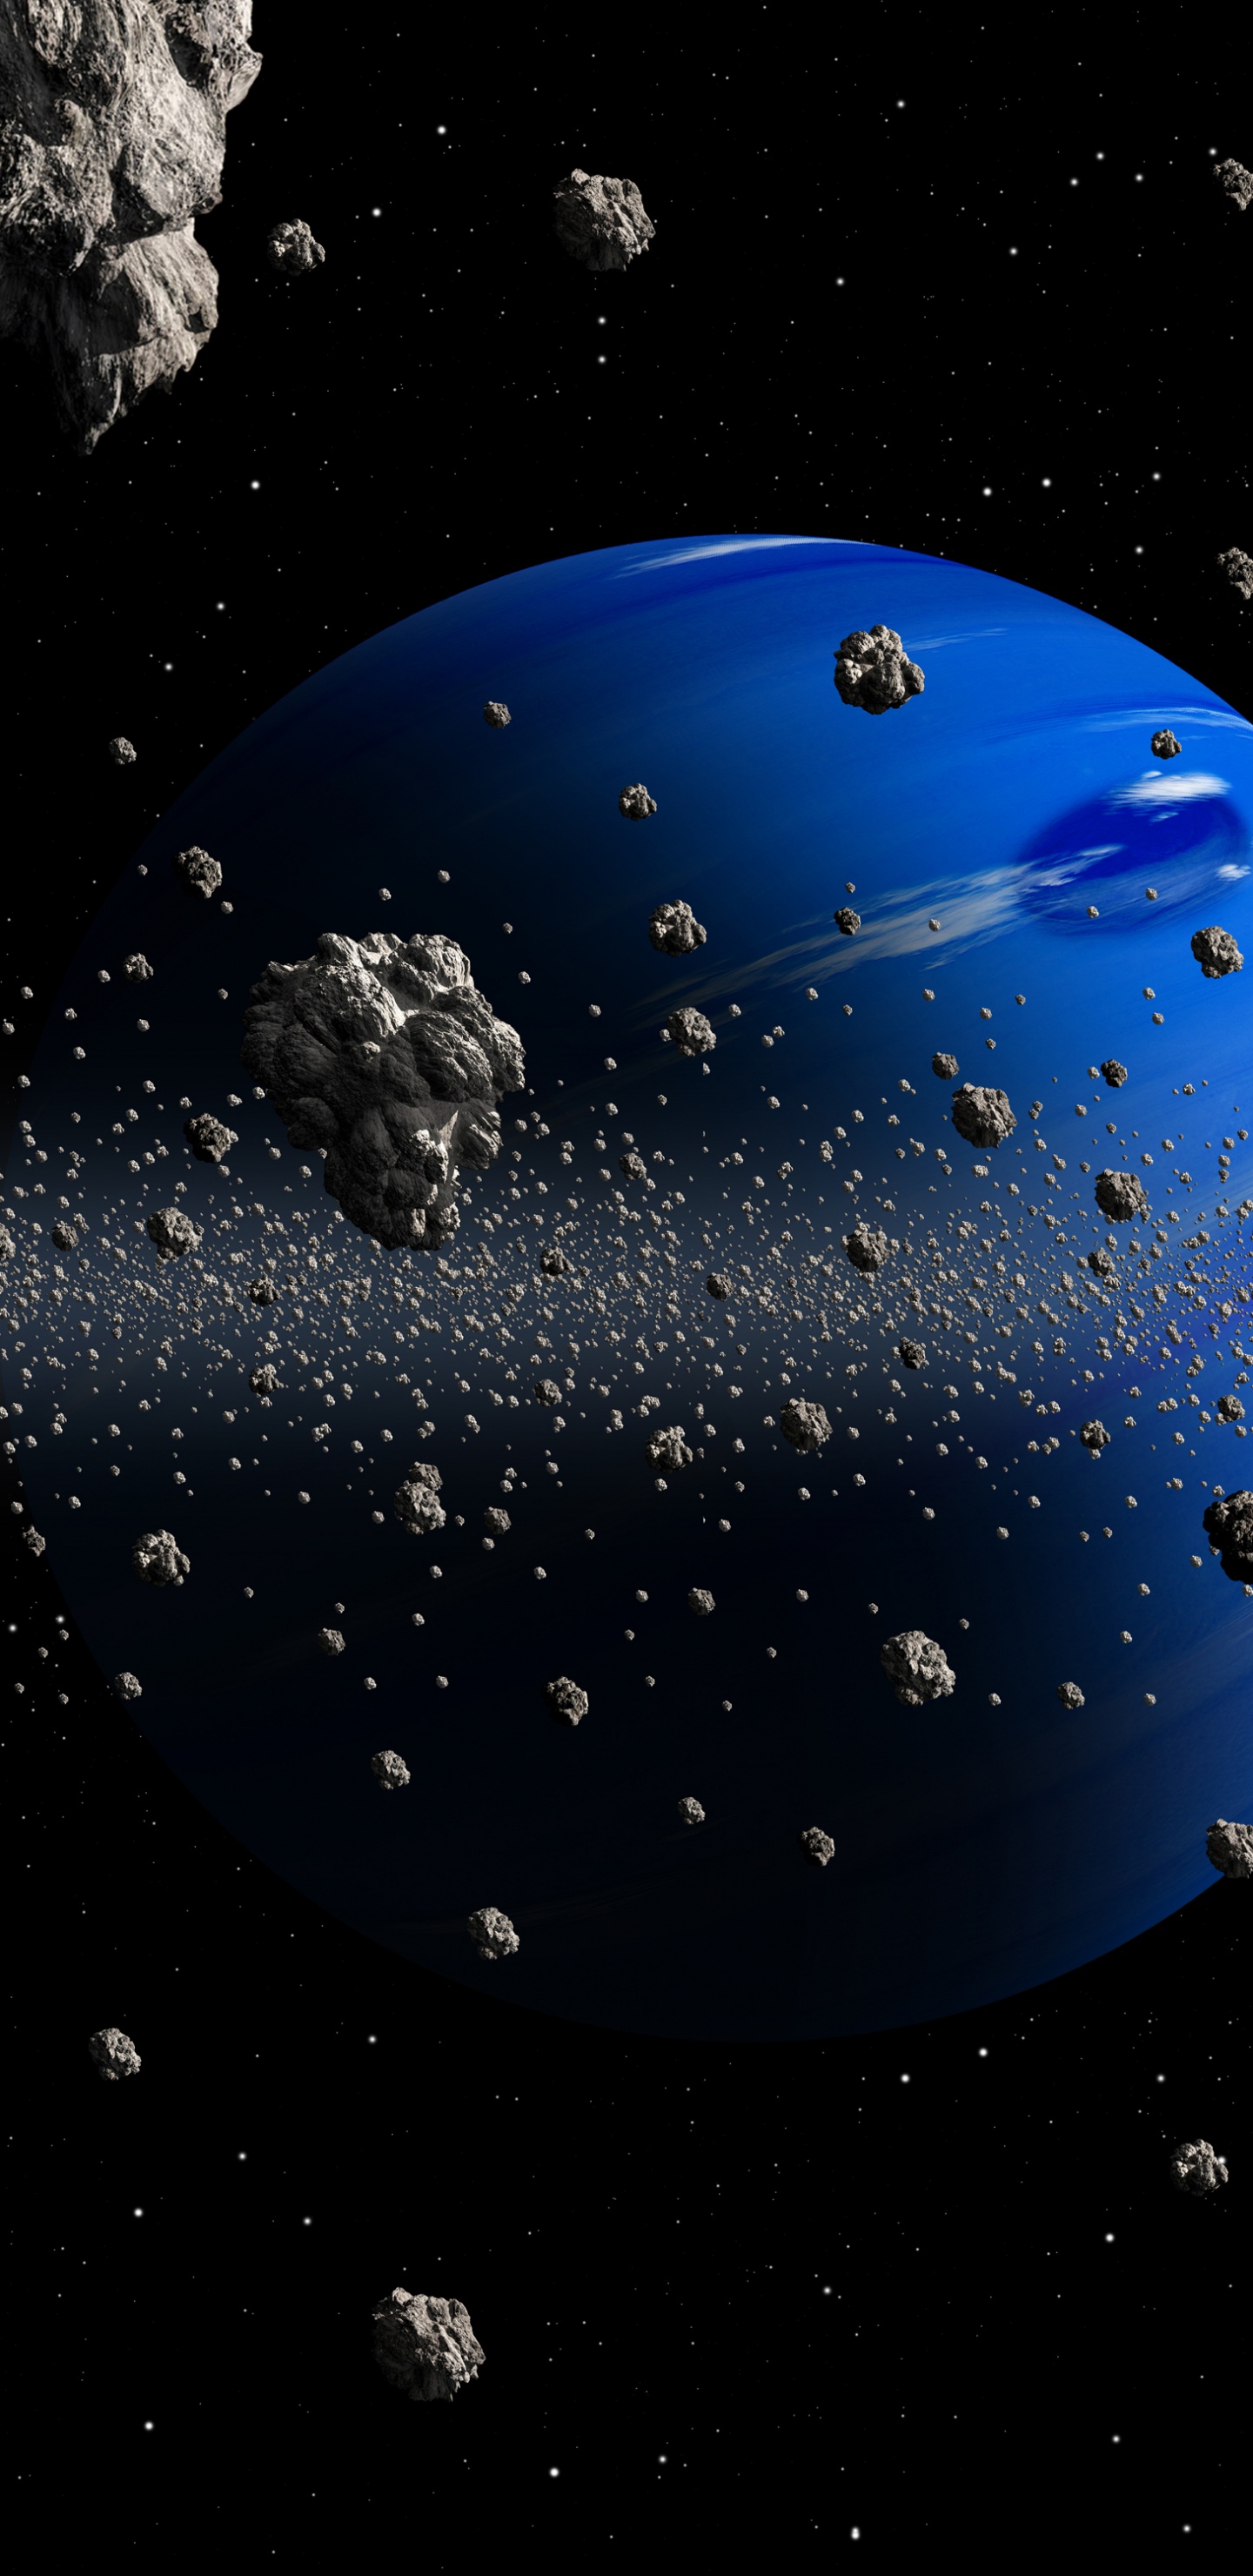 小行星, 这个星球, 空间, 外层空间, 天文学对象 壁纸 1440x2960 允许